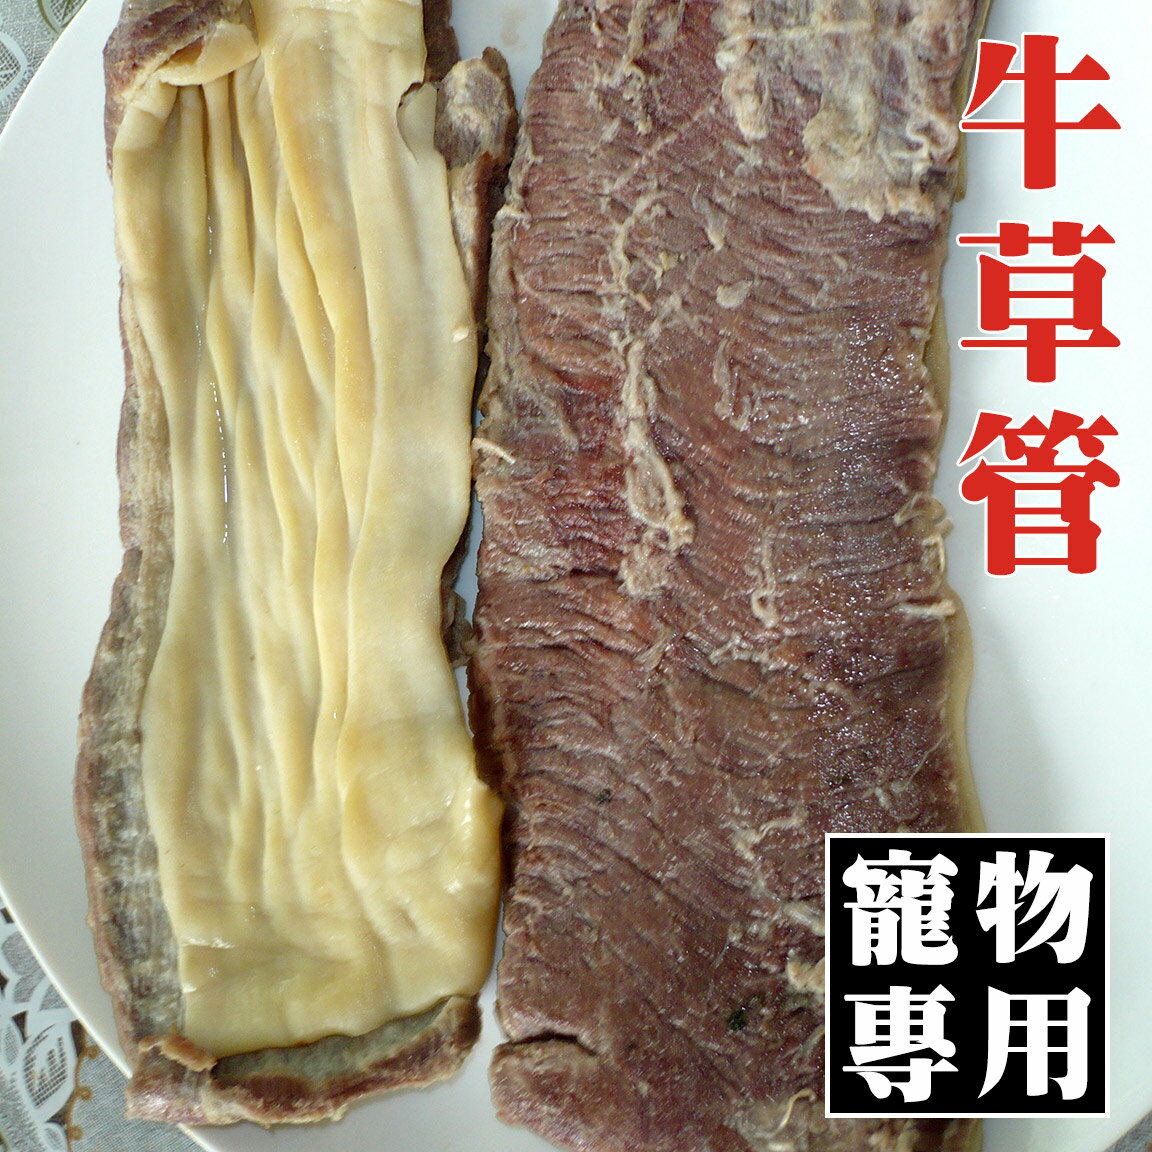 【寵物專用】【陸霸王】牛草管 300g/包。低脂 無腥味 寵物零食專用食材